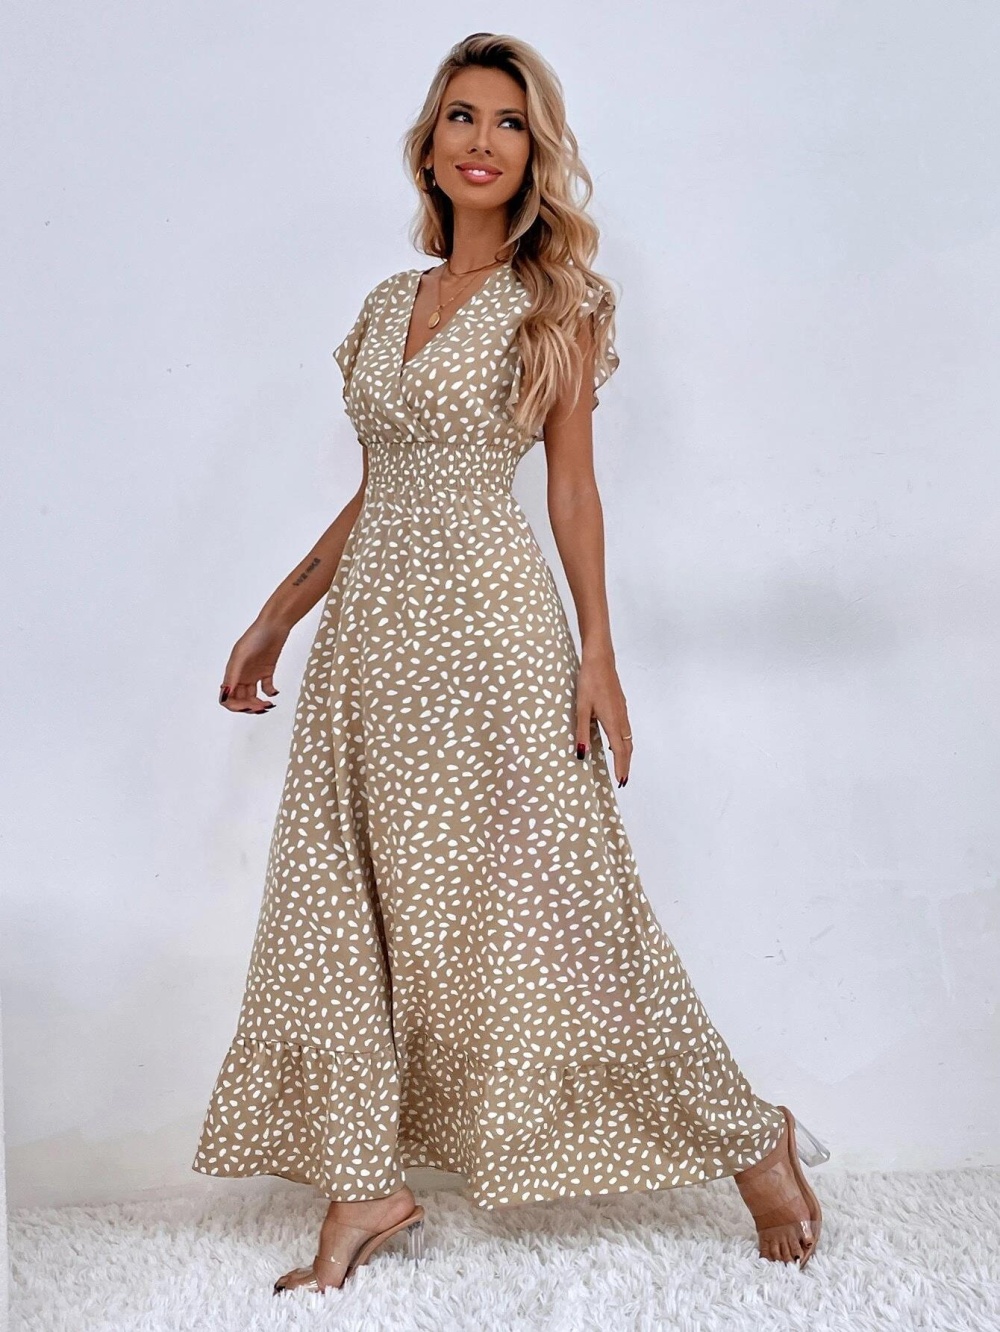 Elegant long dress European style dress for women